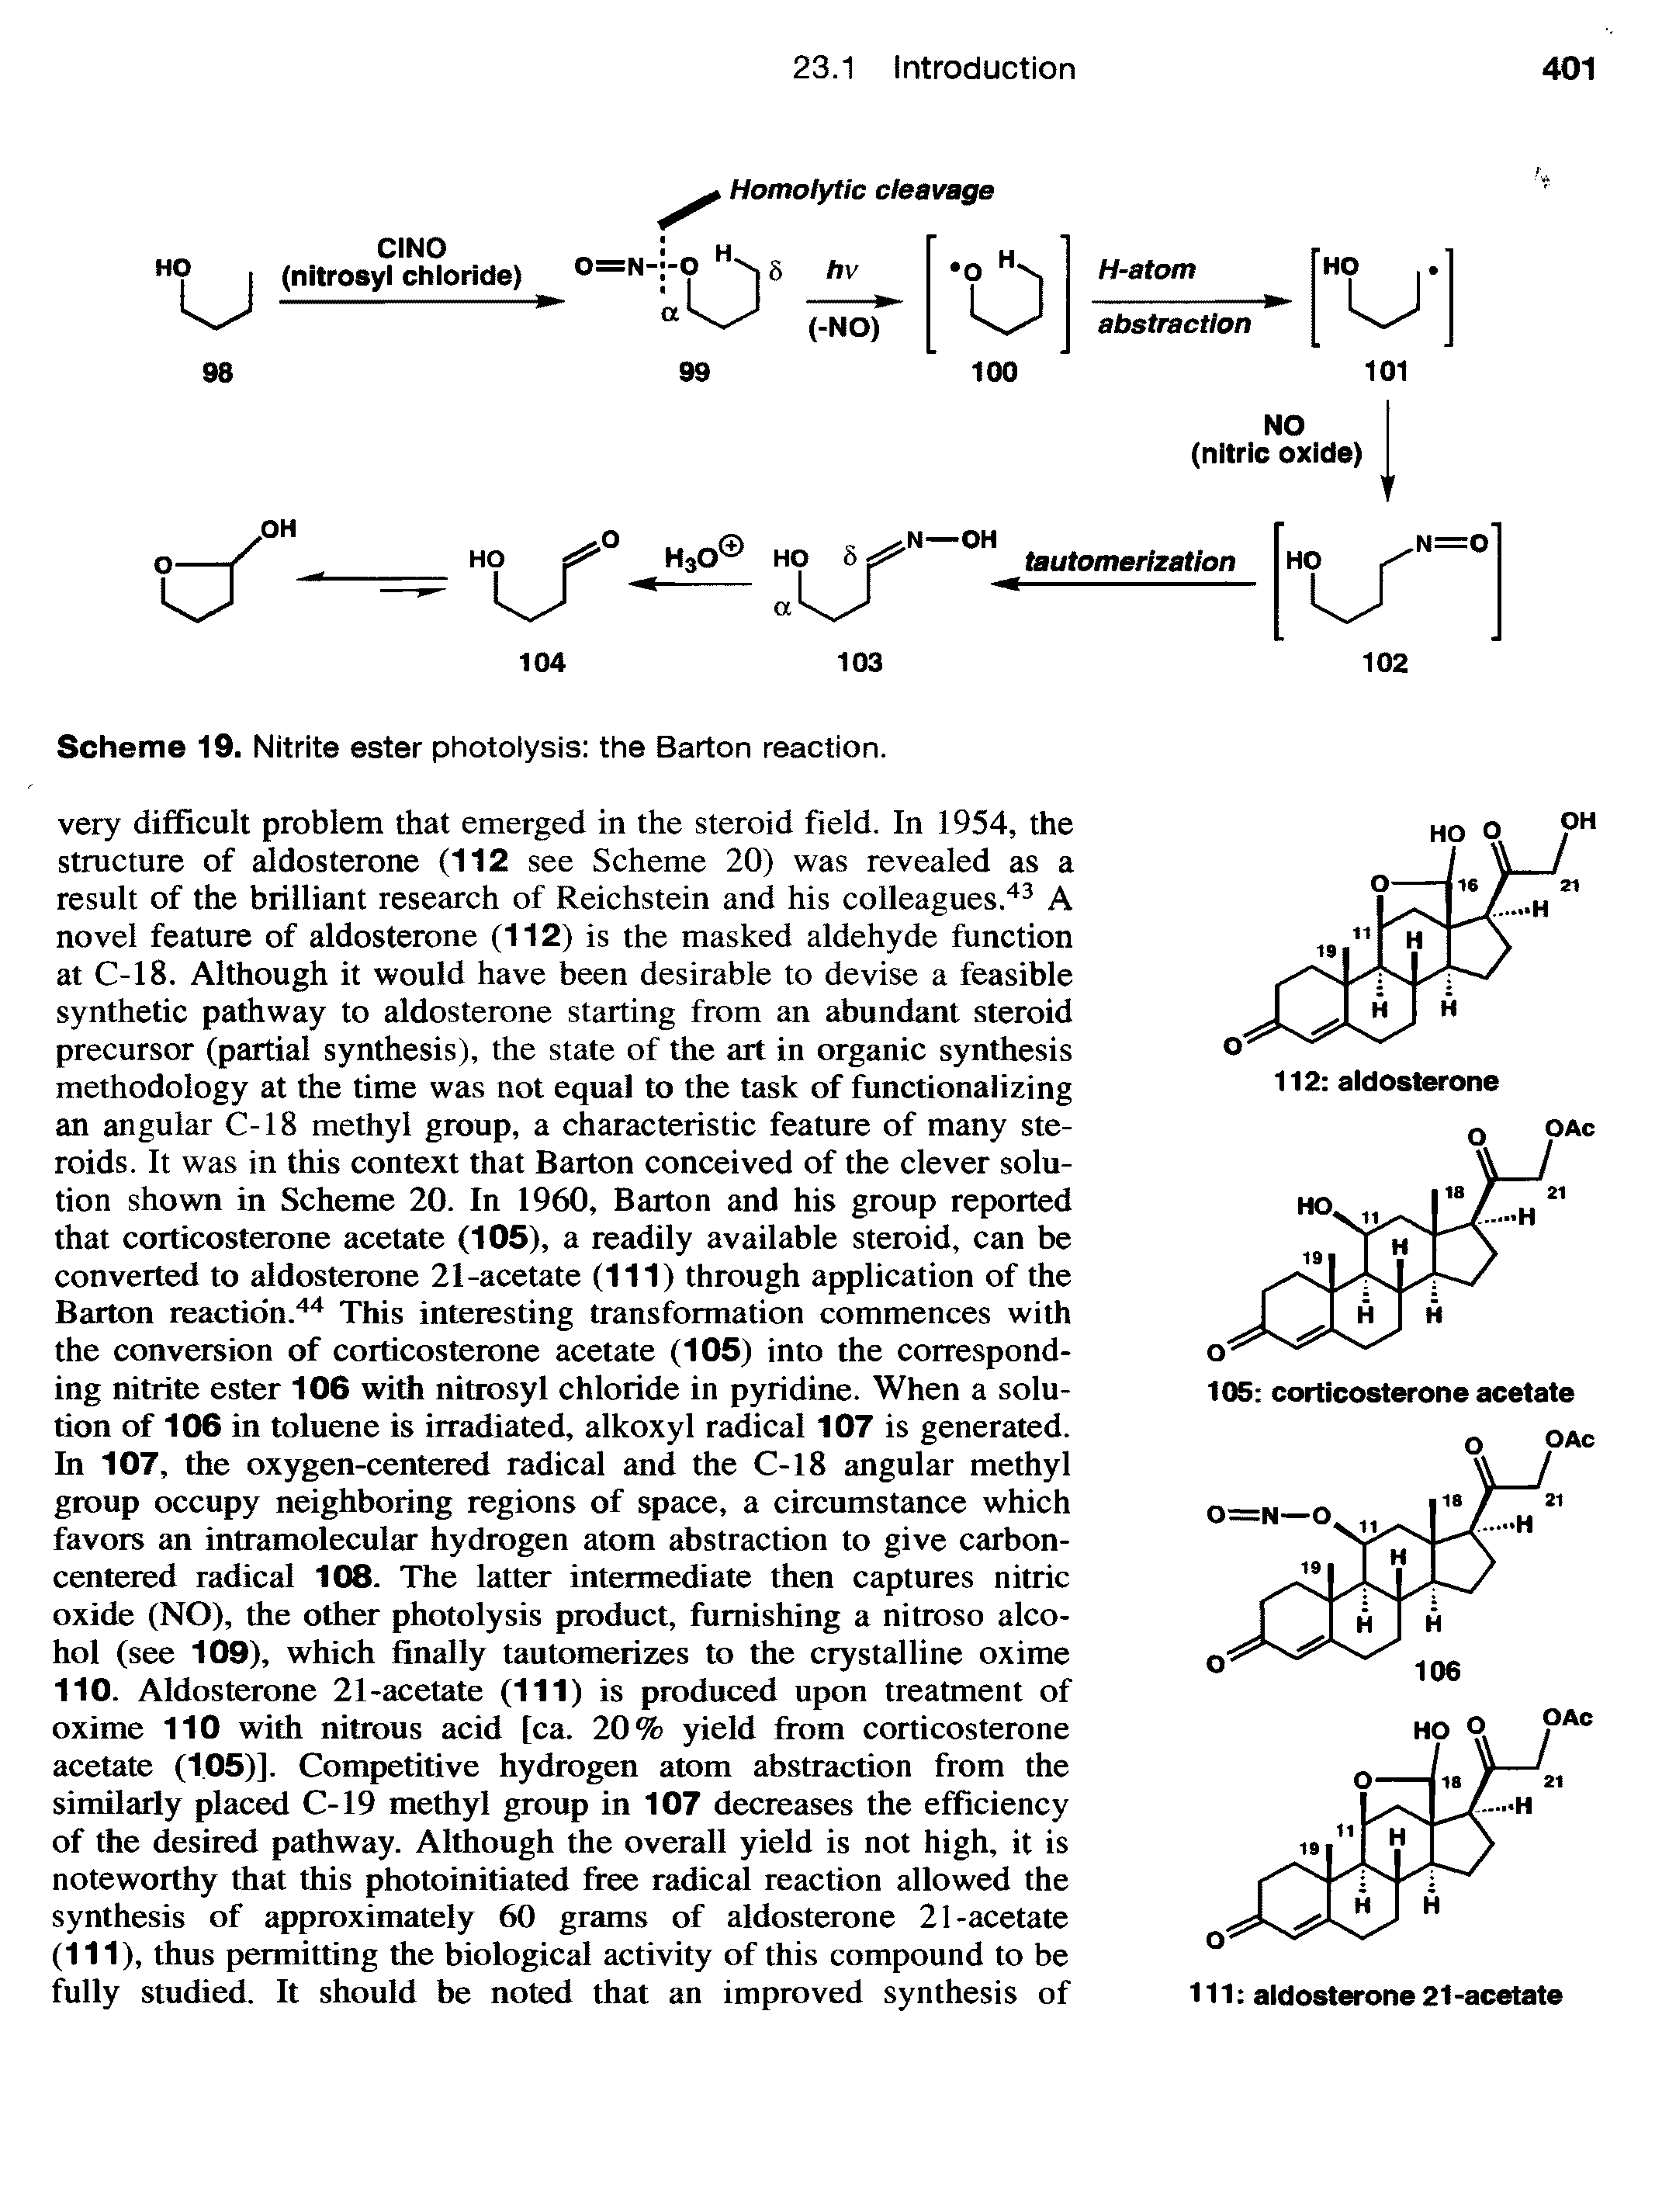 Scheme 19. Nitrite ester photolysis the Barton reaction.